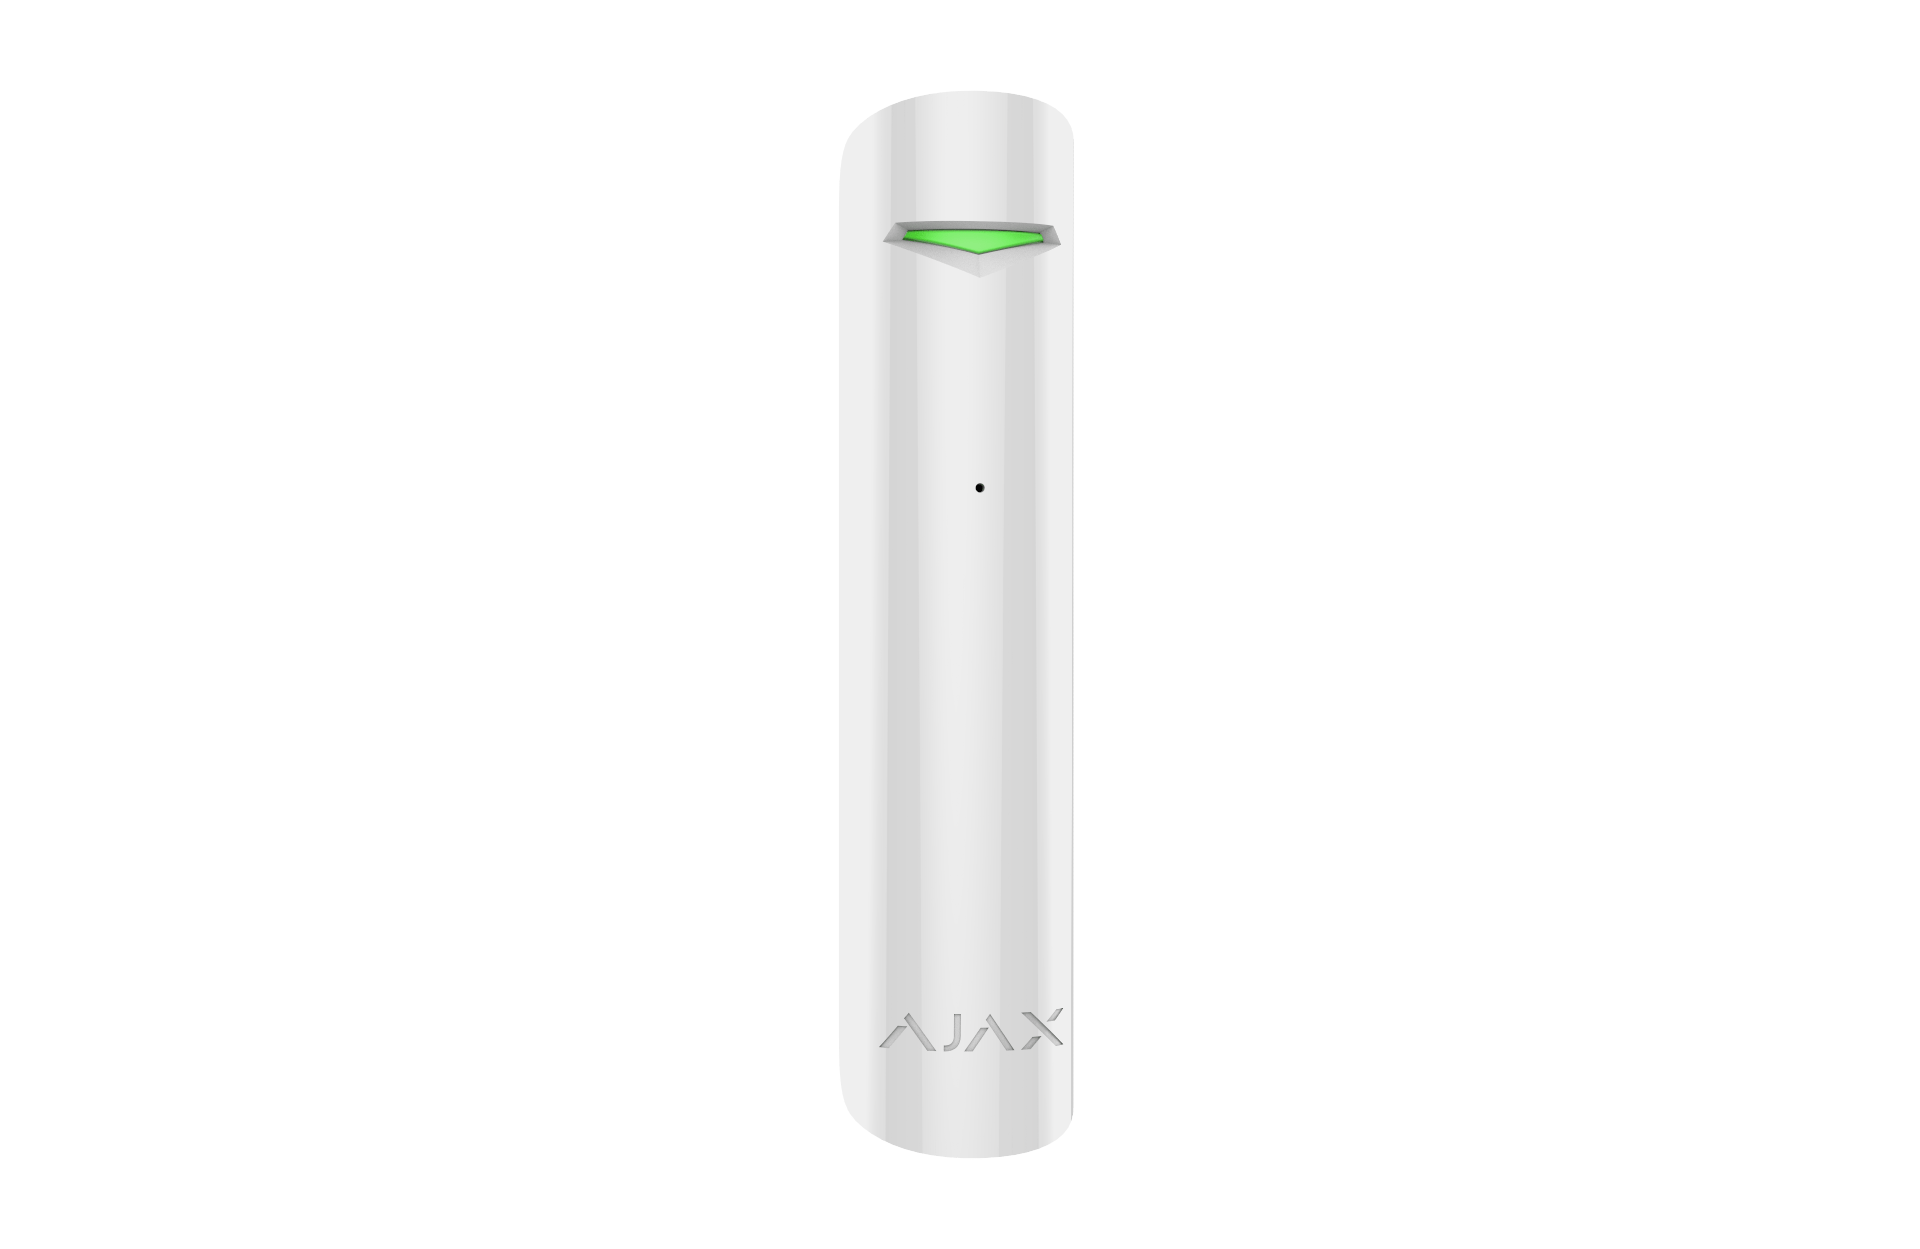 Billede af Ajax - DoorProtect Plus - Åbningskontakt med vibrations sensor - Hvid